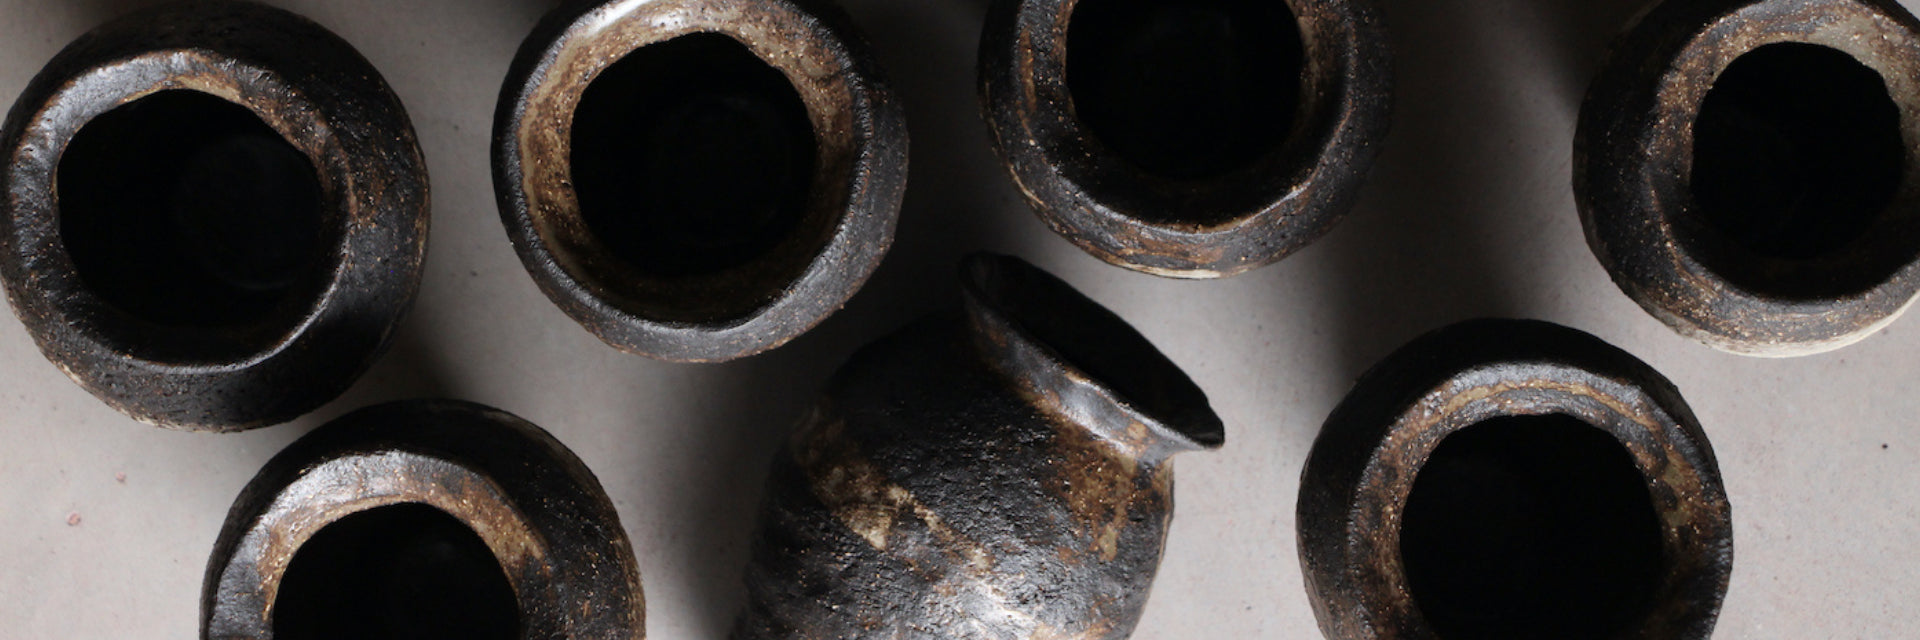 Vase en céramique artisanale